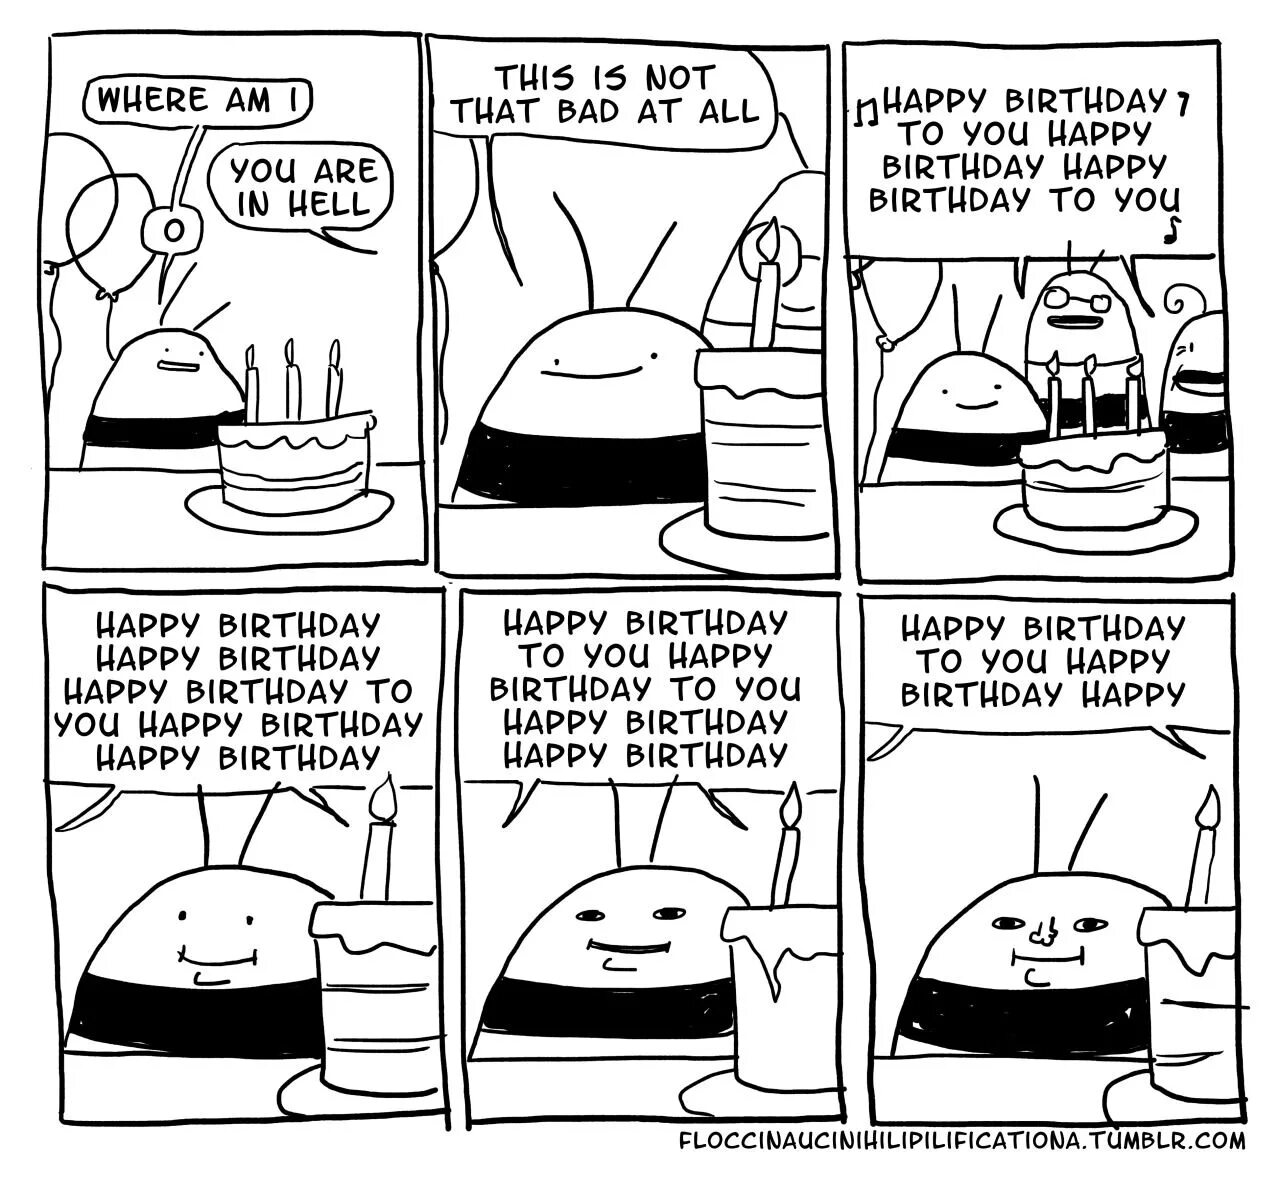 Комикс день рождения. С днем рождения комикс. Смешные комиксы про день рождения. Короткий комикс про день рождения. Мини комикс на день рождения.